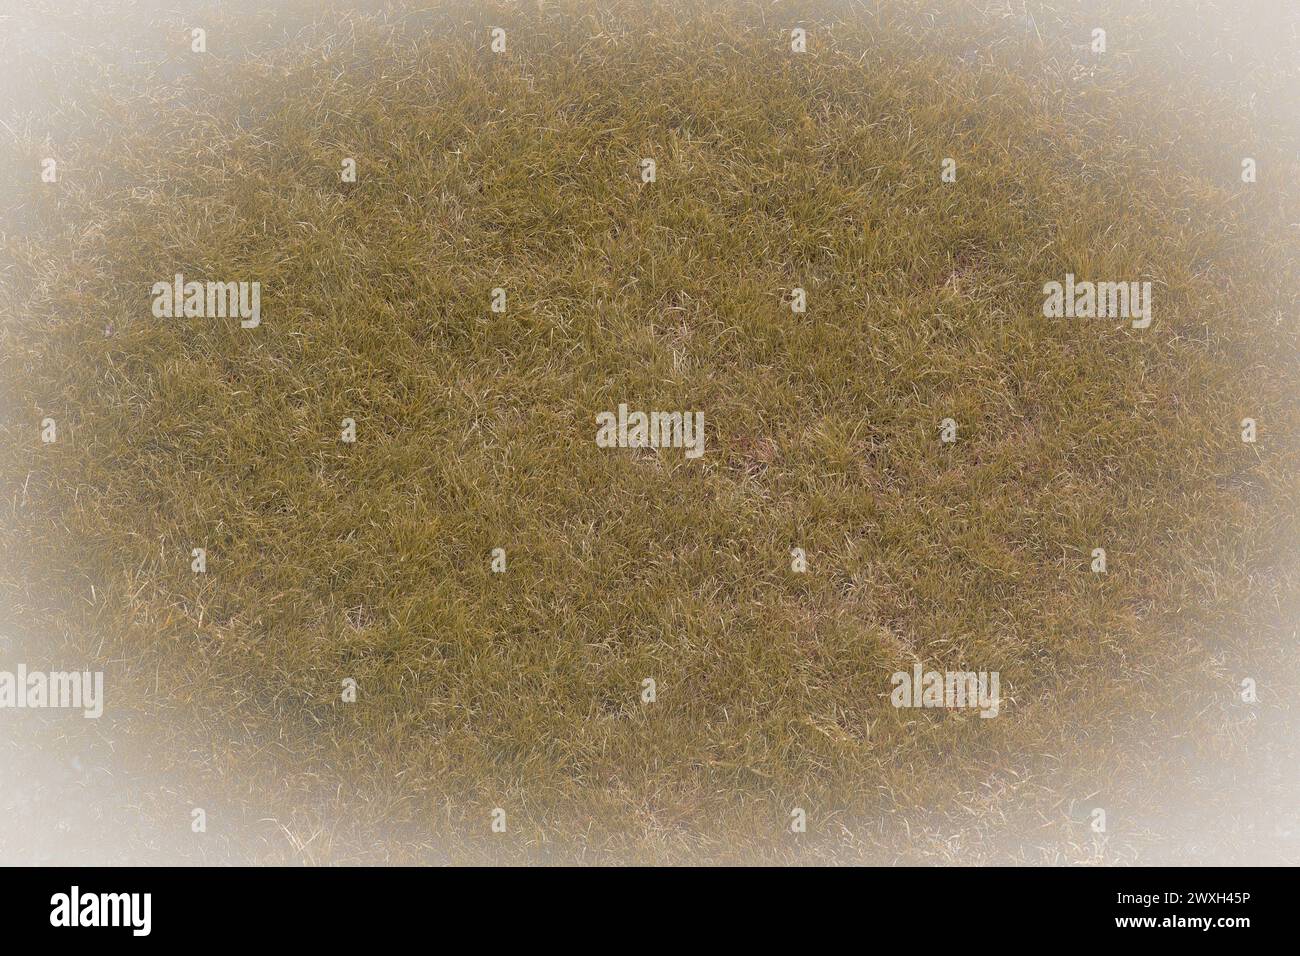 Jaunie vieille herbe surface naturelle pelouse abstraite texture de fond abstraite blanc vignette de conception abstraite. Banque D'Images